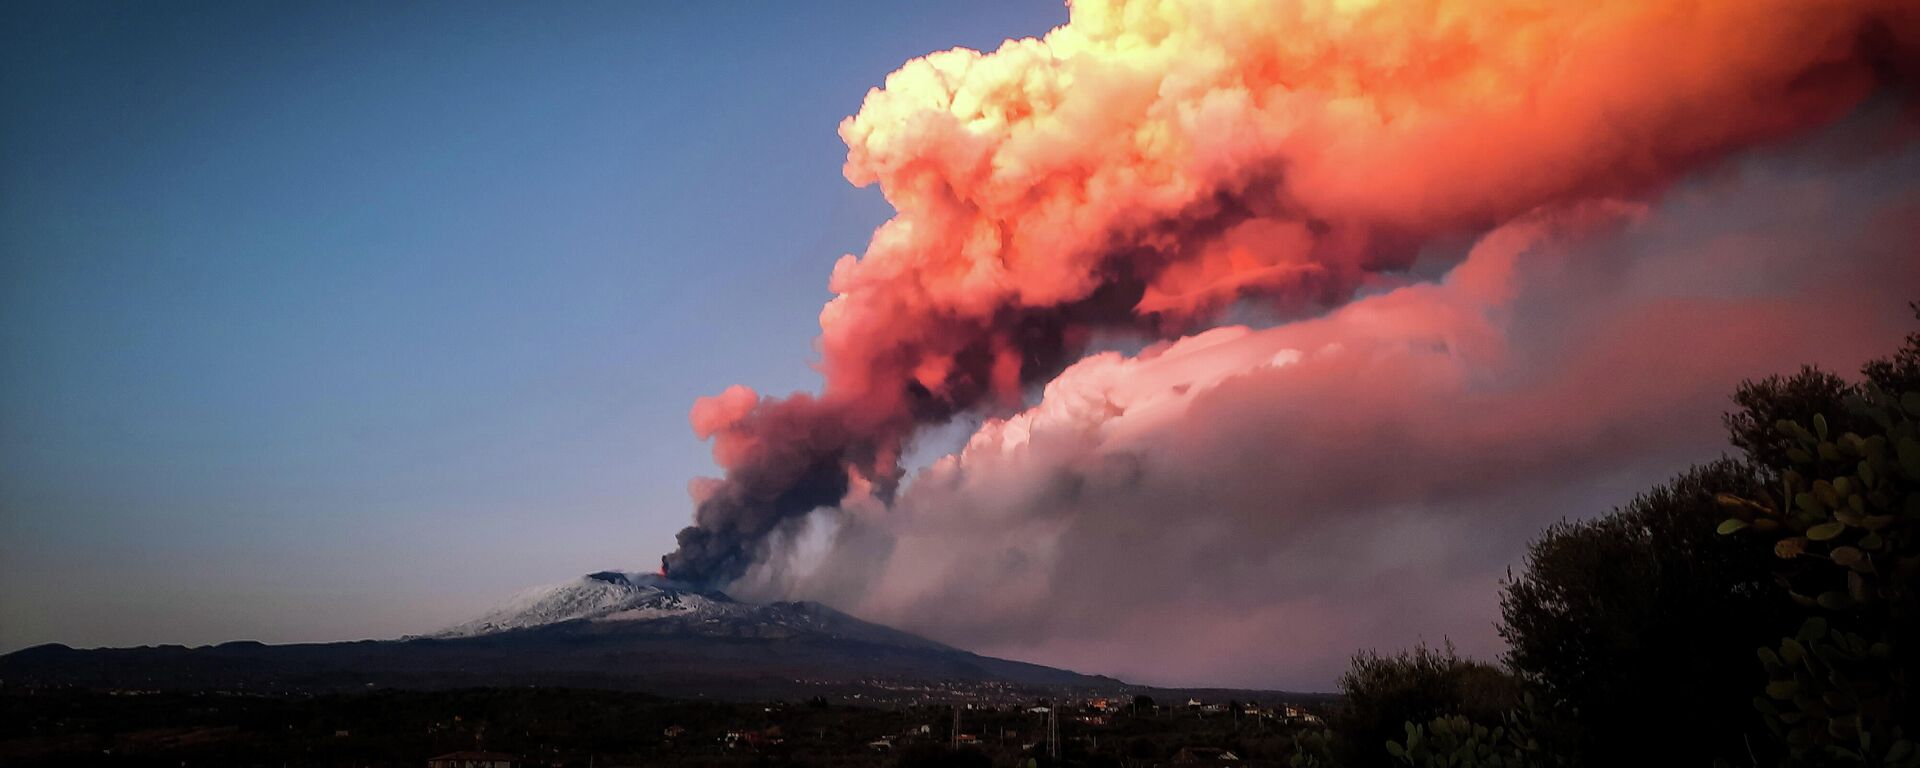 Volcán italiano Etna entra en erupción - Sputnik Mundo, 1920, 17.02.2021